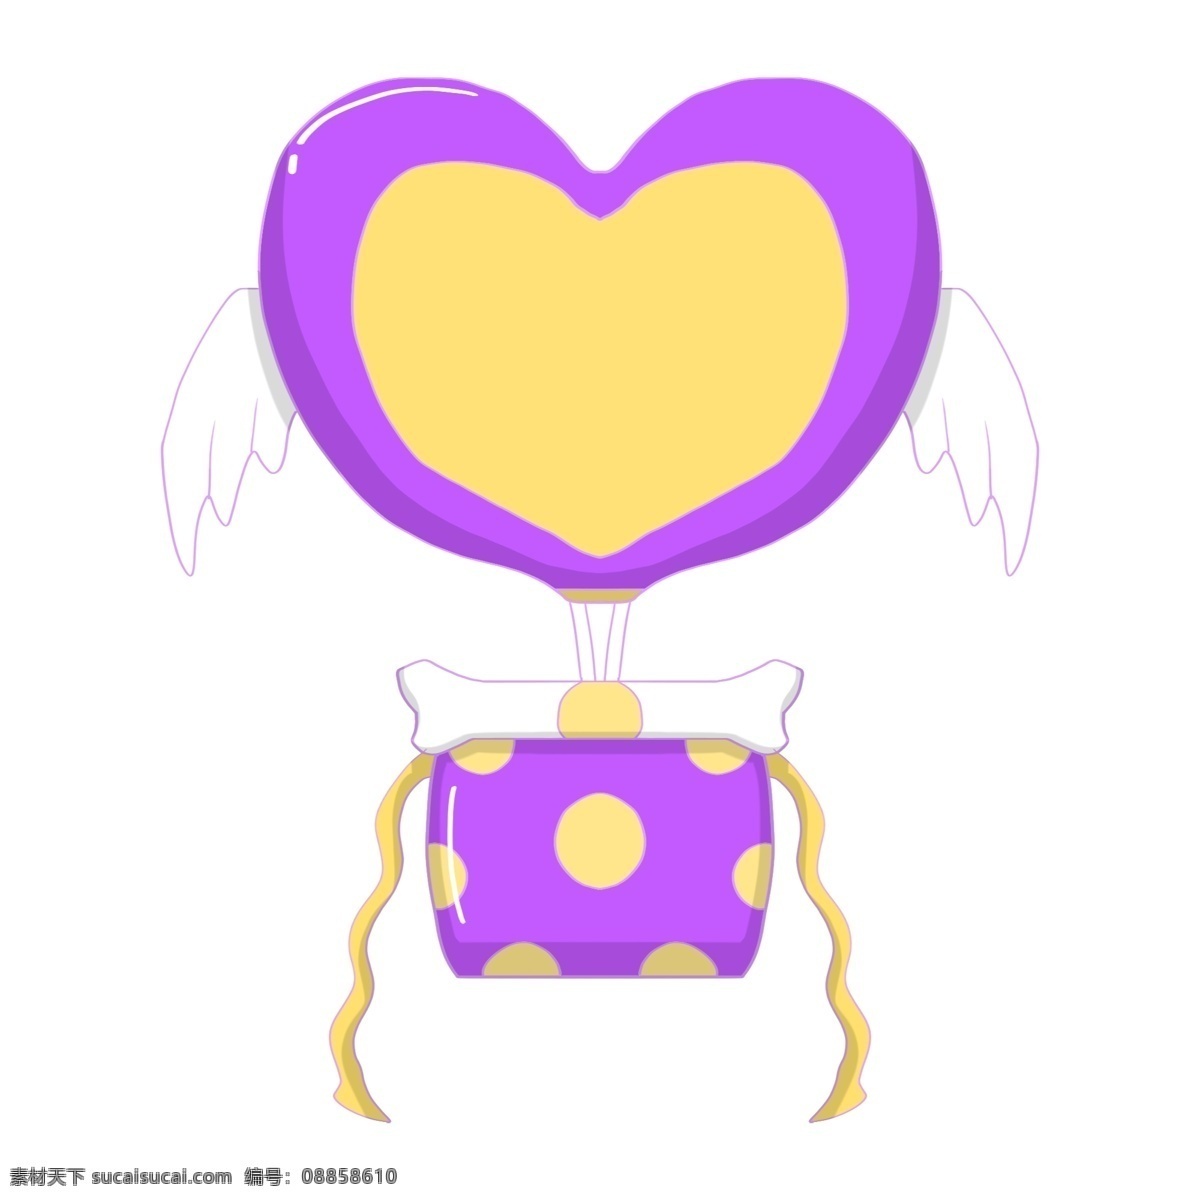 桃 心 气球 礼物 插画 黄色的蝴蝶结 蝴蝶结装饰 手绘气球礼物 卡通气球礼物 紫色 桃心气球礼物 漂亮